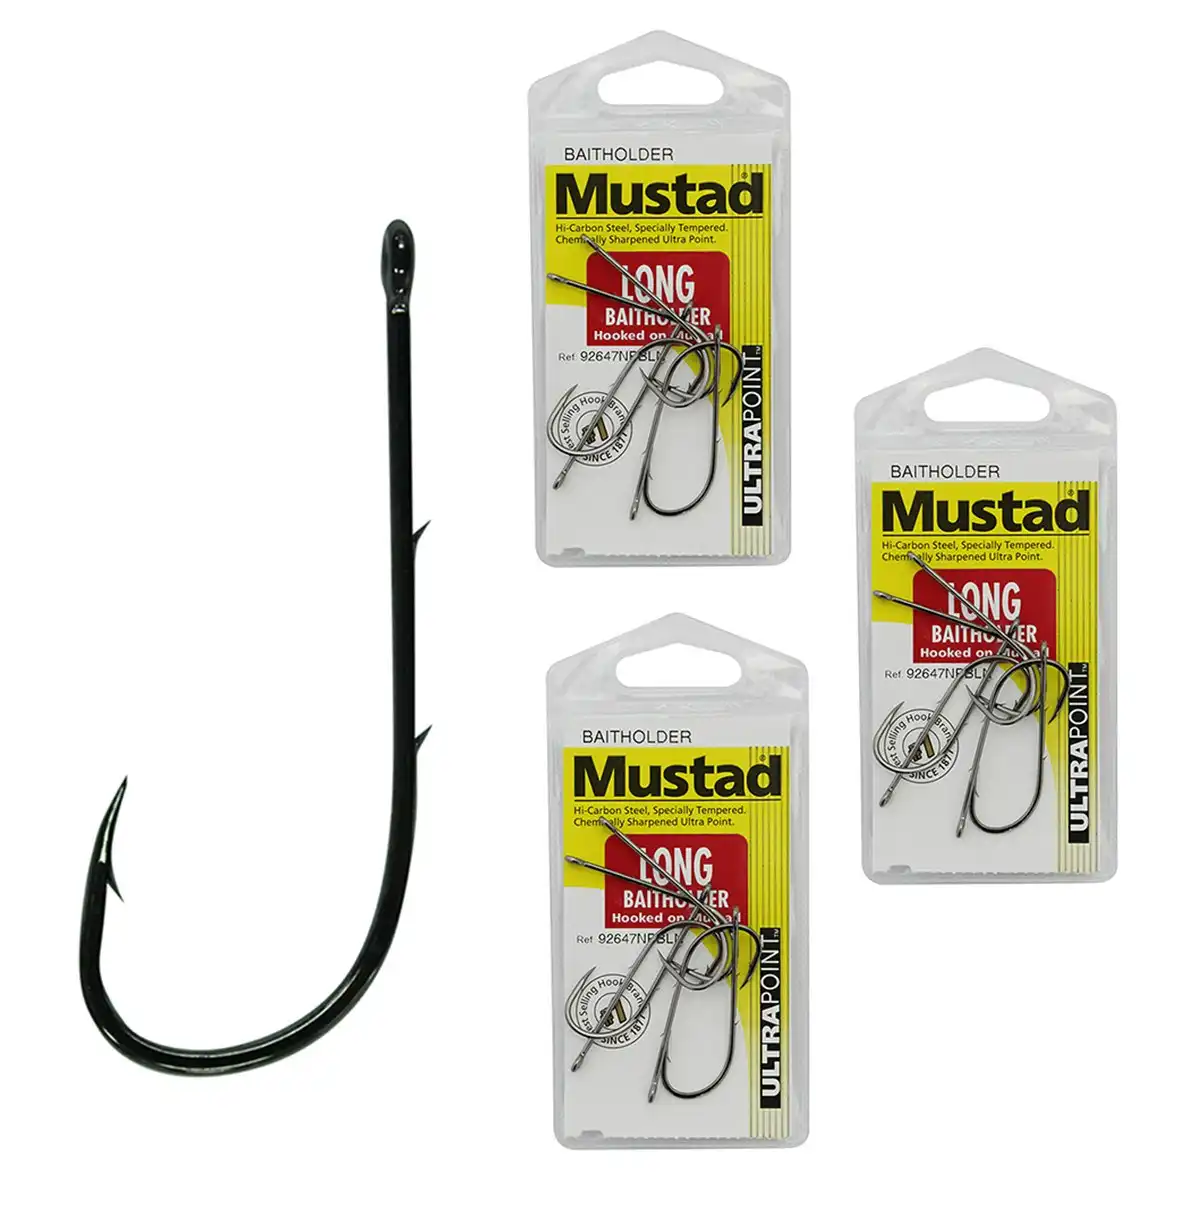 3 Packs of Mustad 92647NPBLN Long Baitholder Chemically Sharp Fishing Hooks